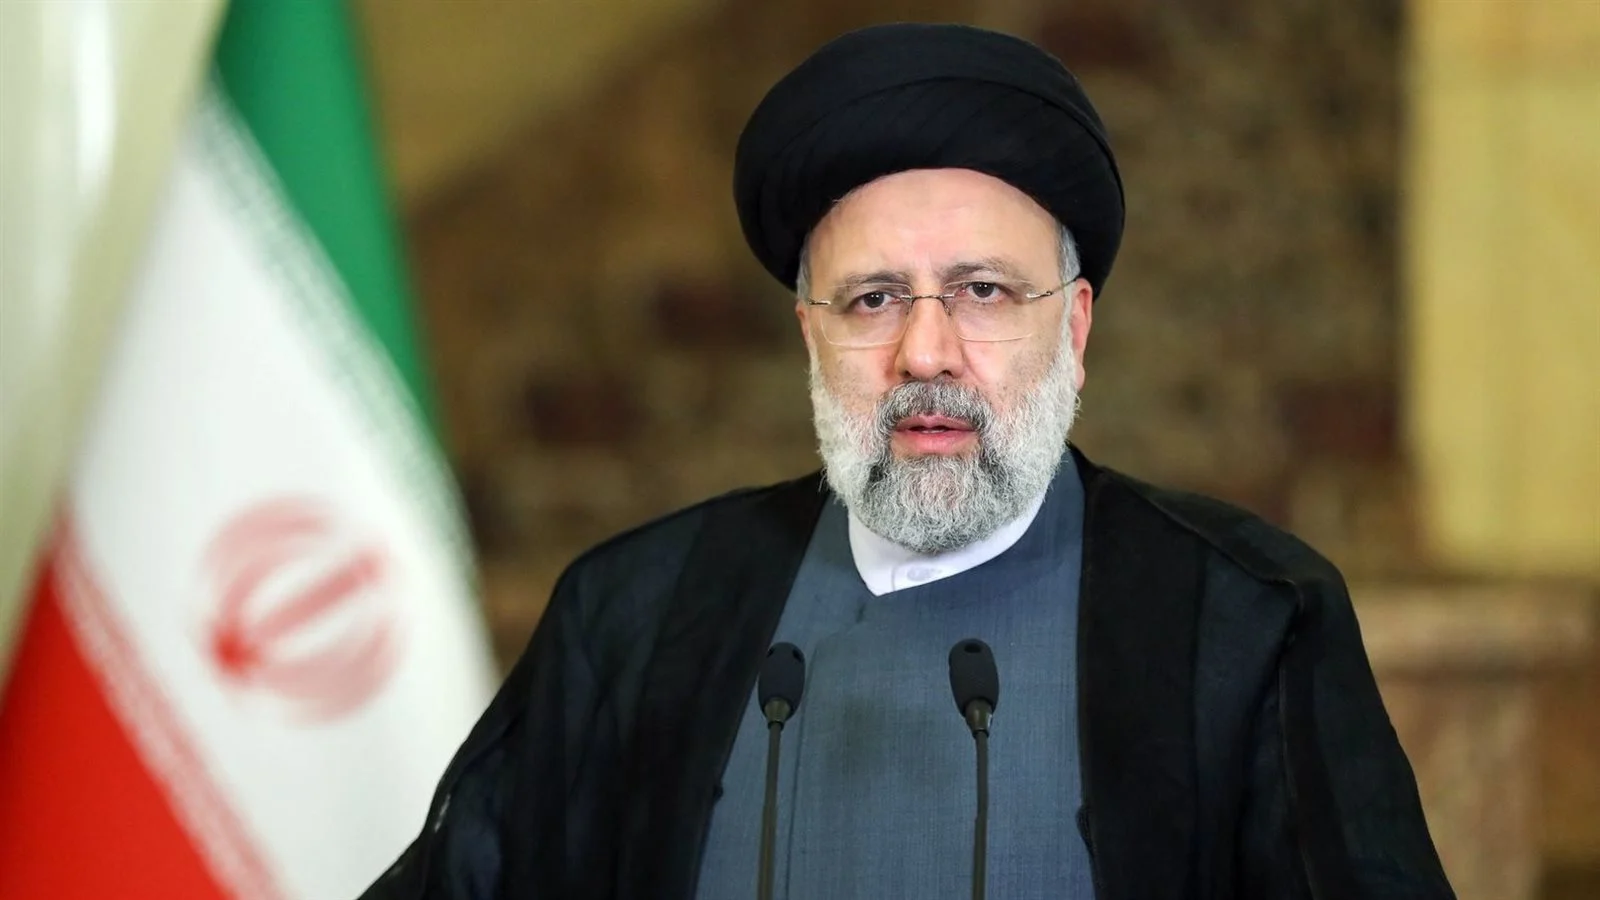 مصادر تؤكد مقتل الرئيس الإيراني وعدد من المسؤولين.. والإعلان خلال ساعات